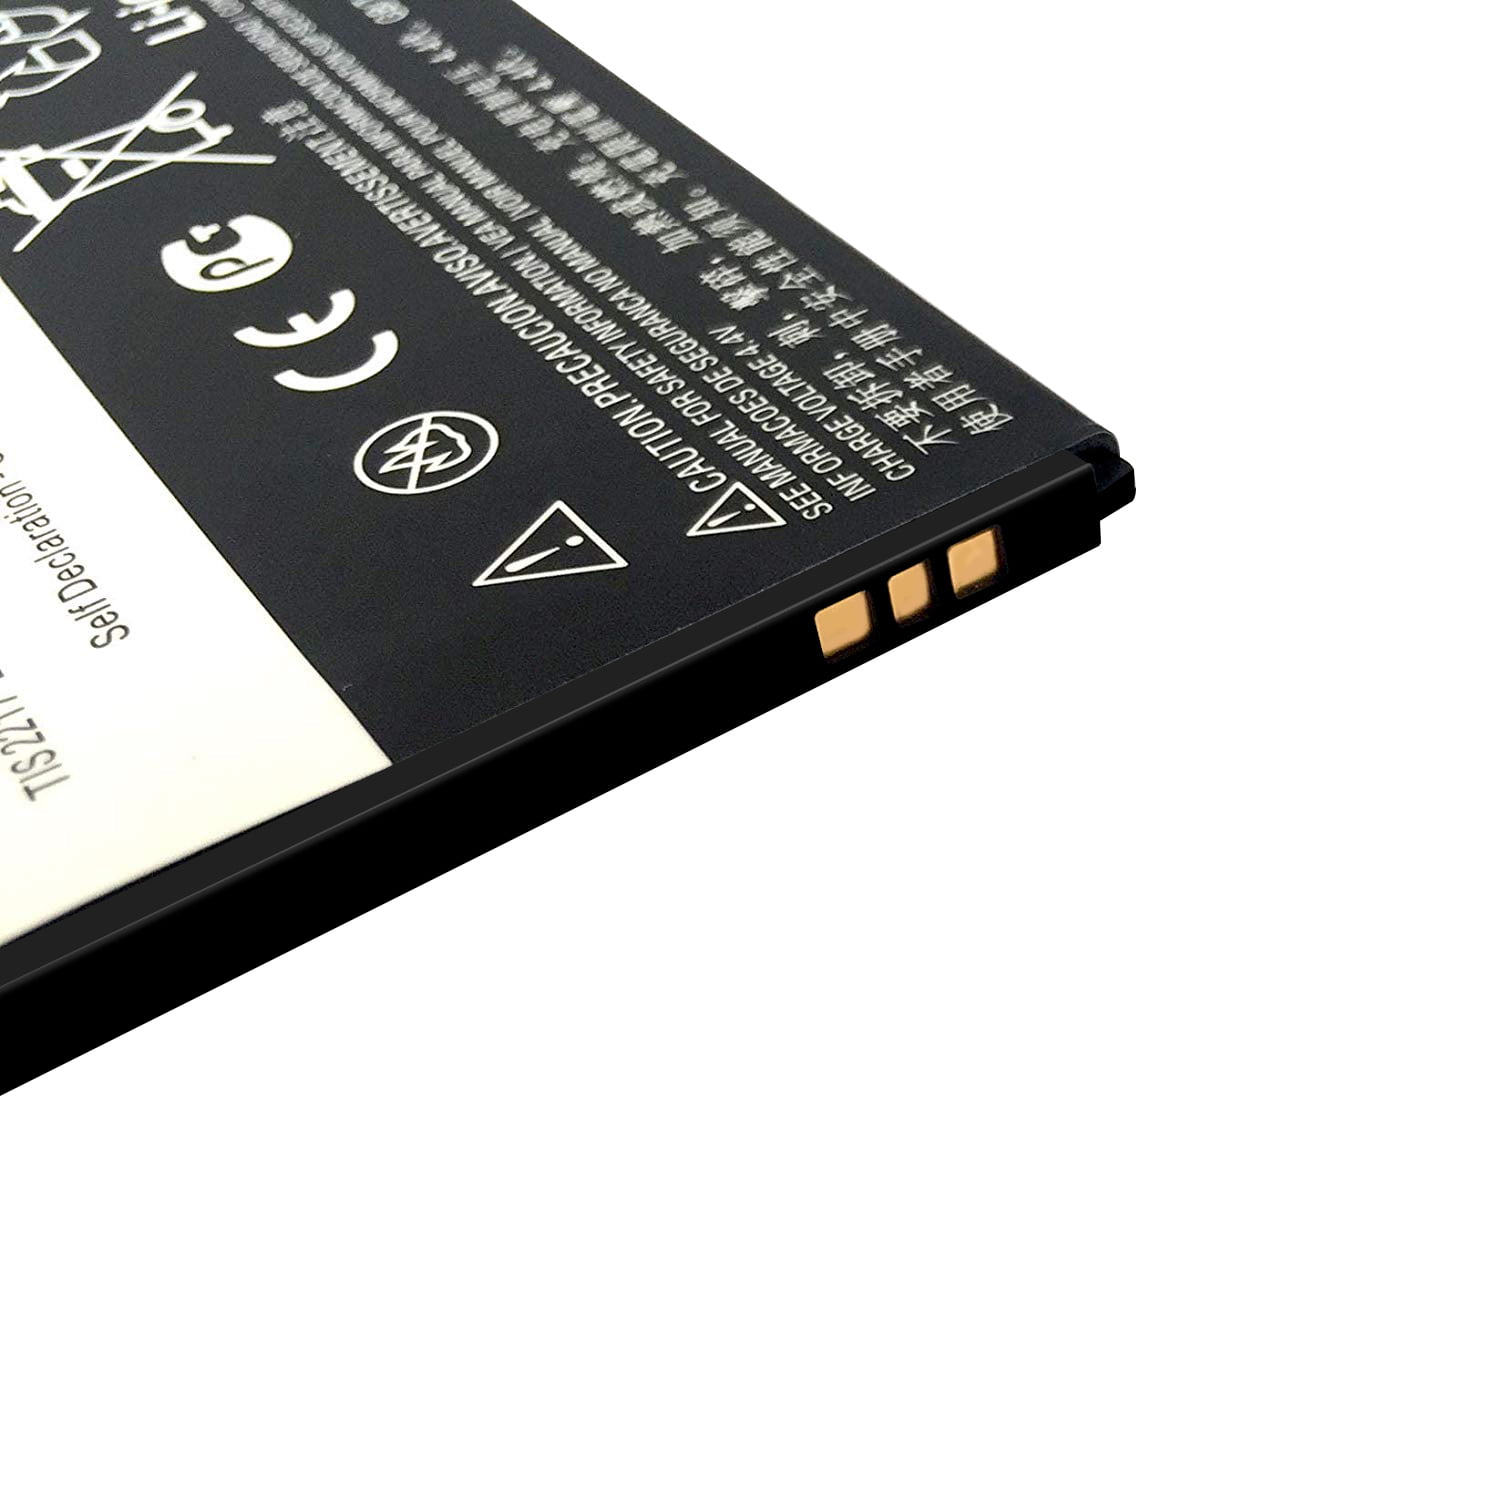 OEM Motorola GK40 Battery for Moto G4 Play, Moto E5 (SB18C30736